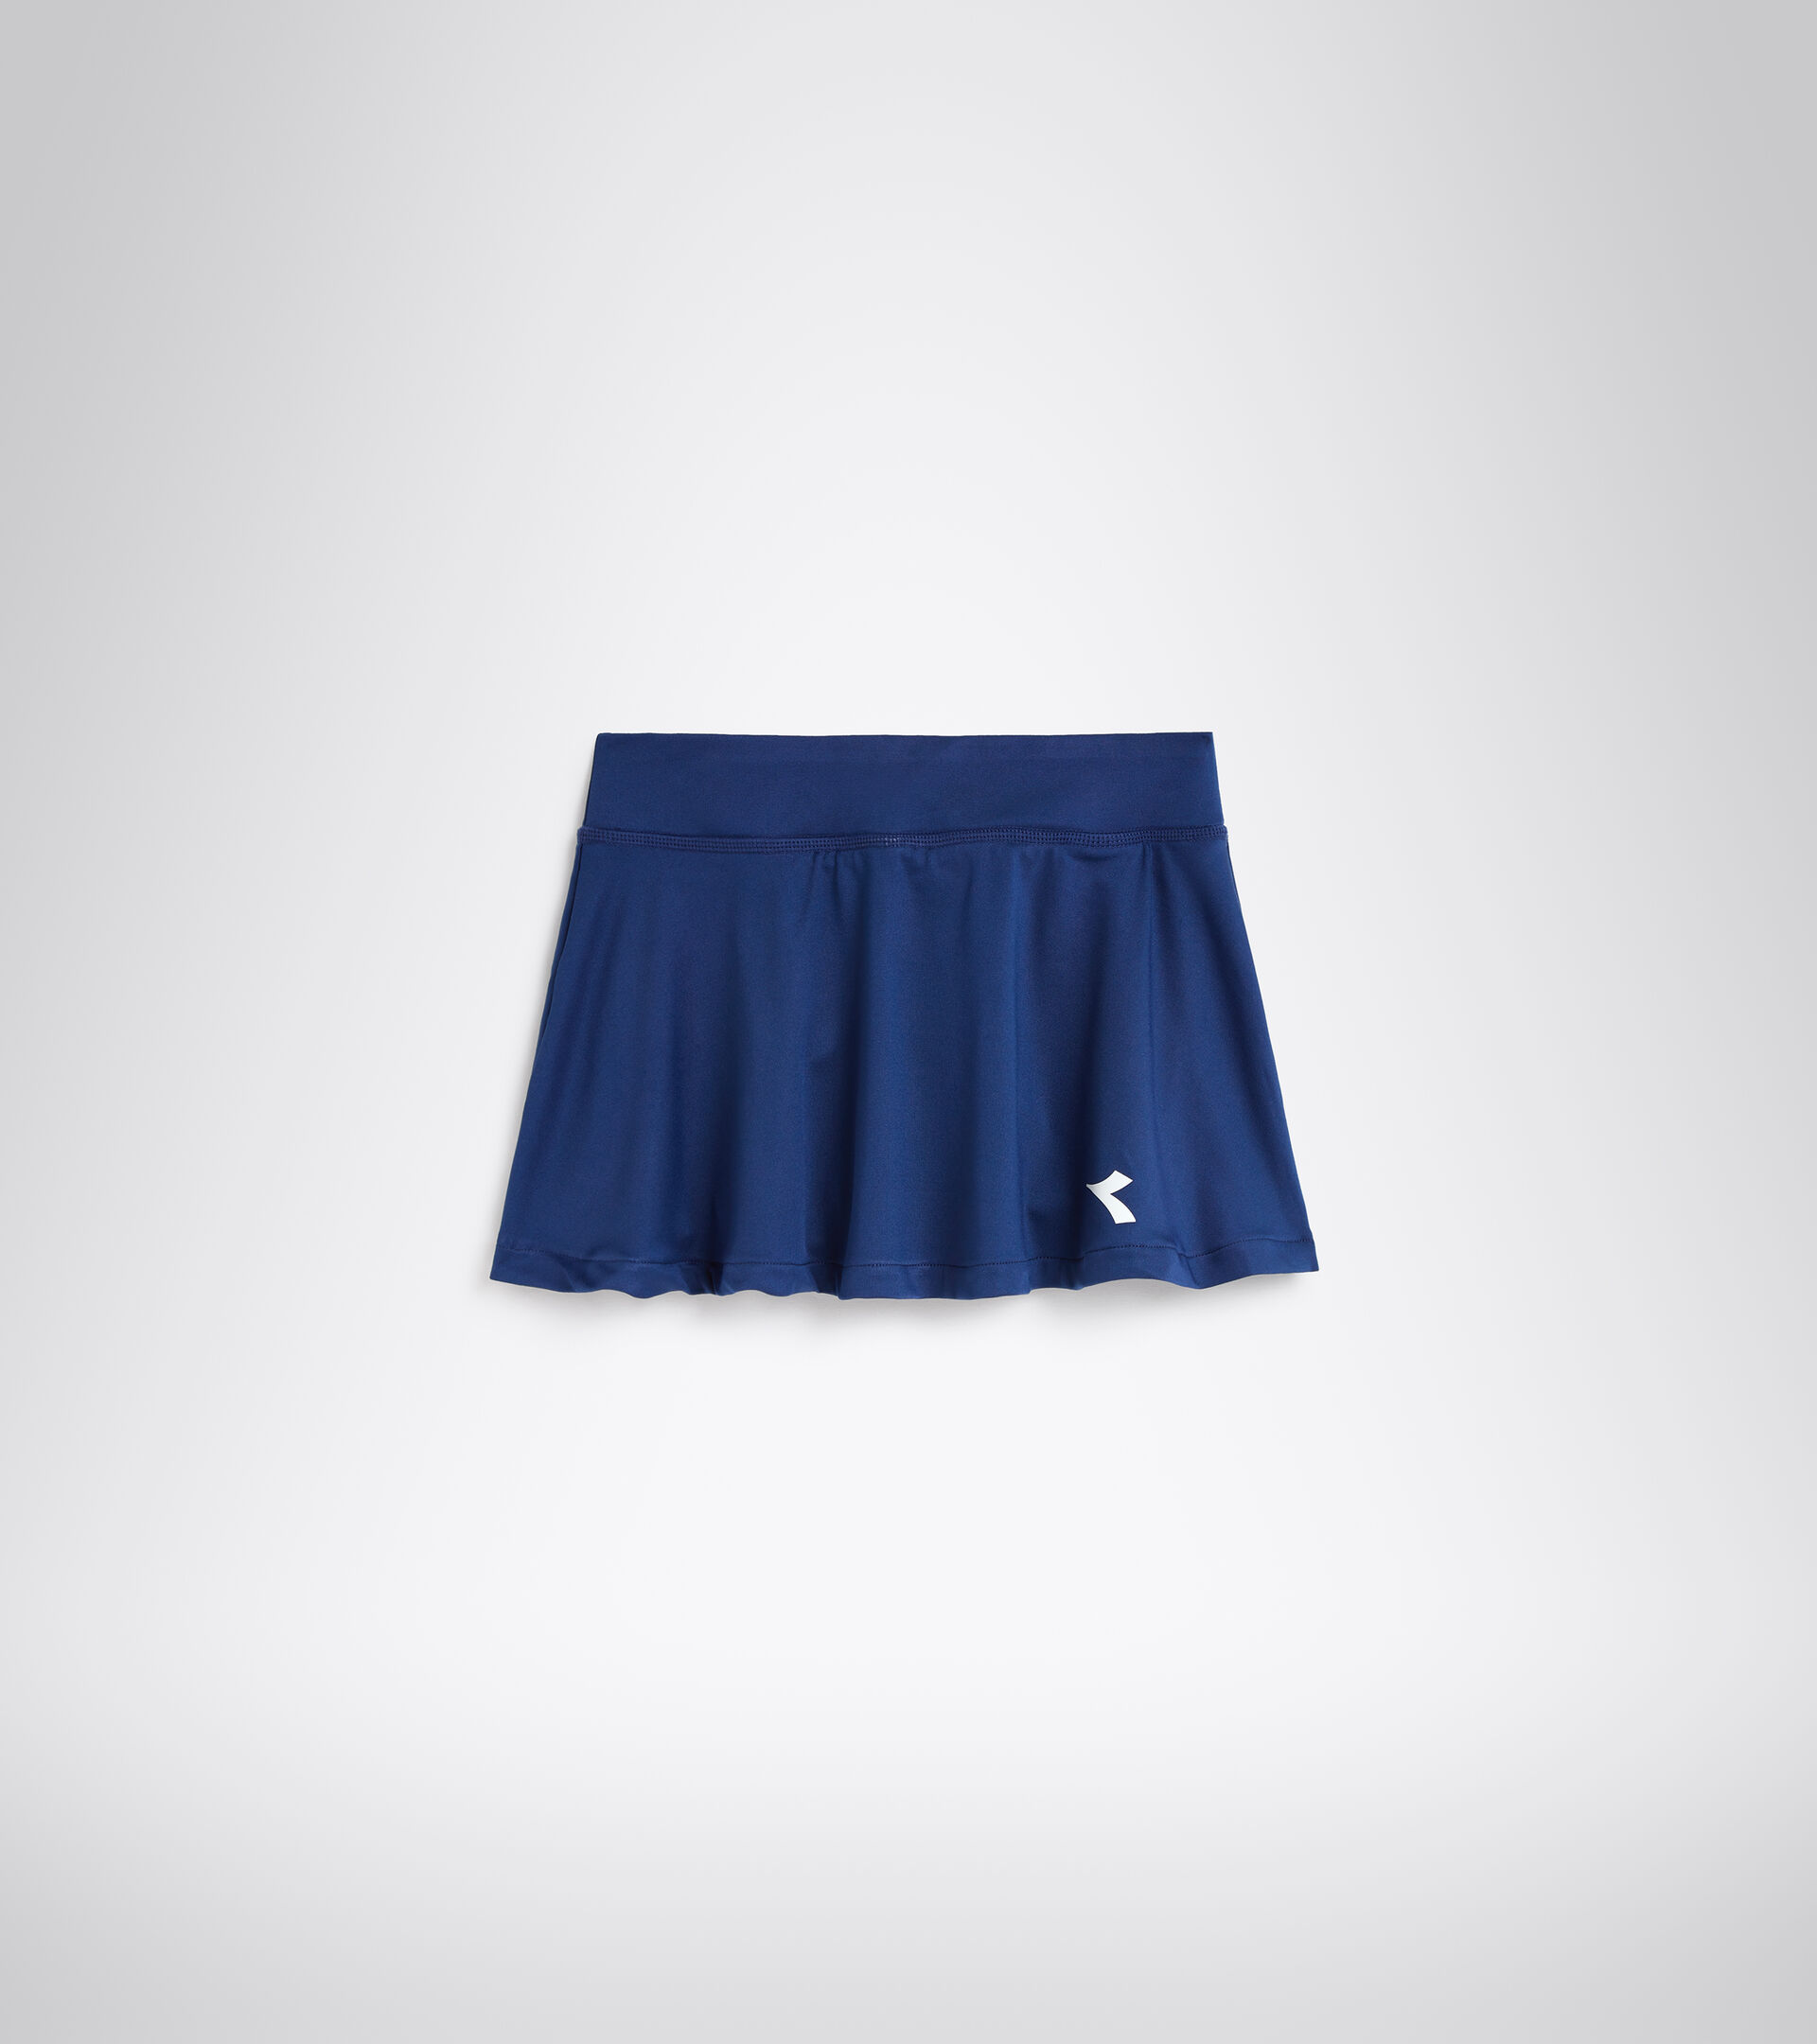 Tennis skirt - Junior G. SKIRT COURT SALTIRE NAVY - Diadora